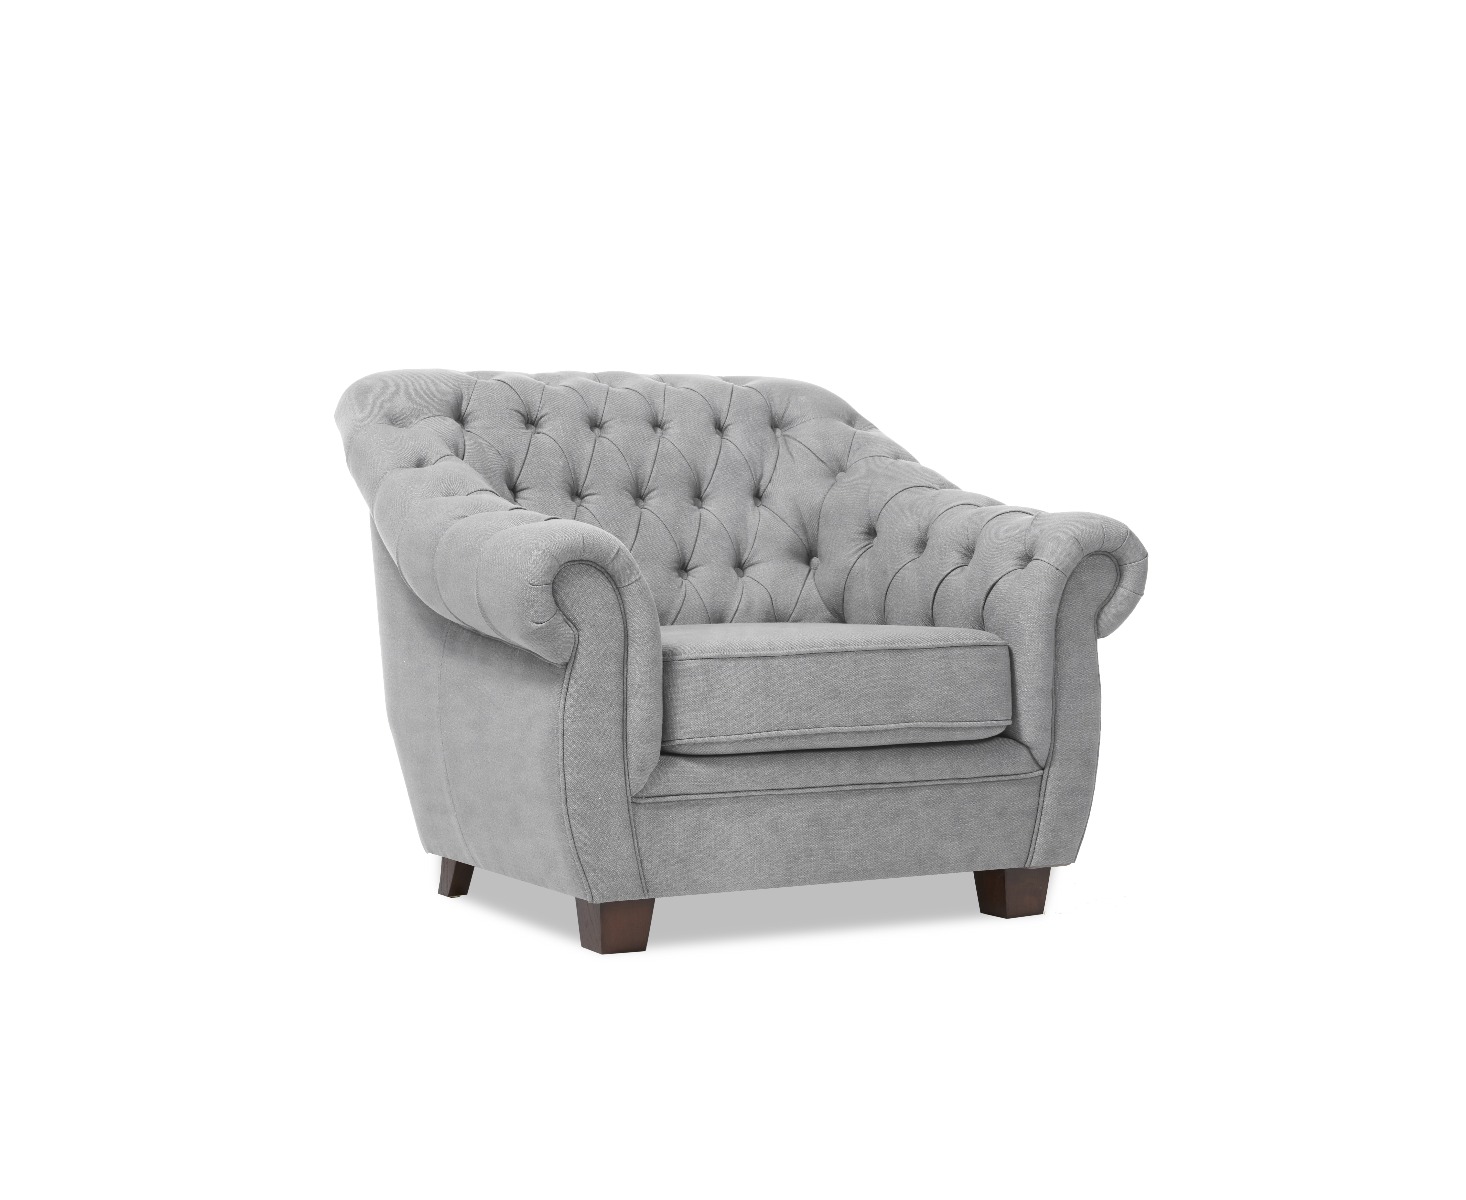 Photo 4 of Eva chesterfield light grey velvet armchair